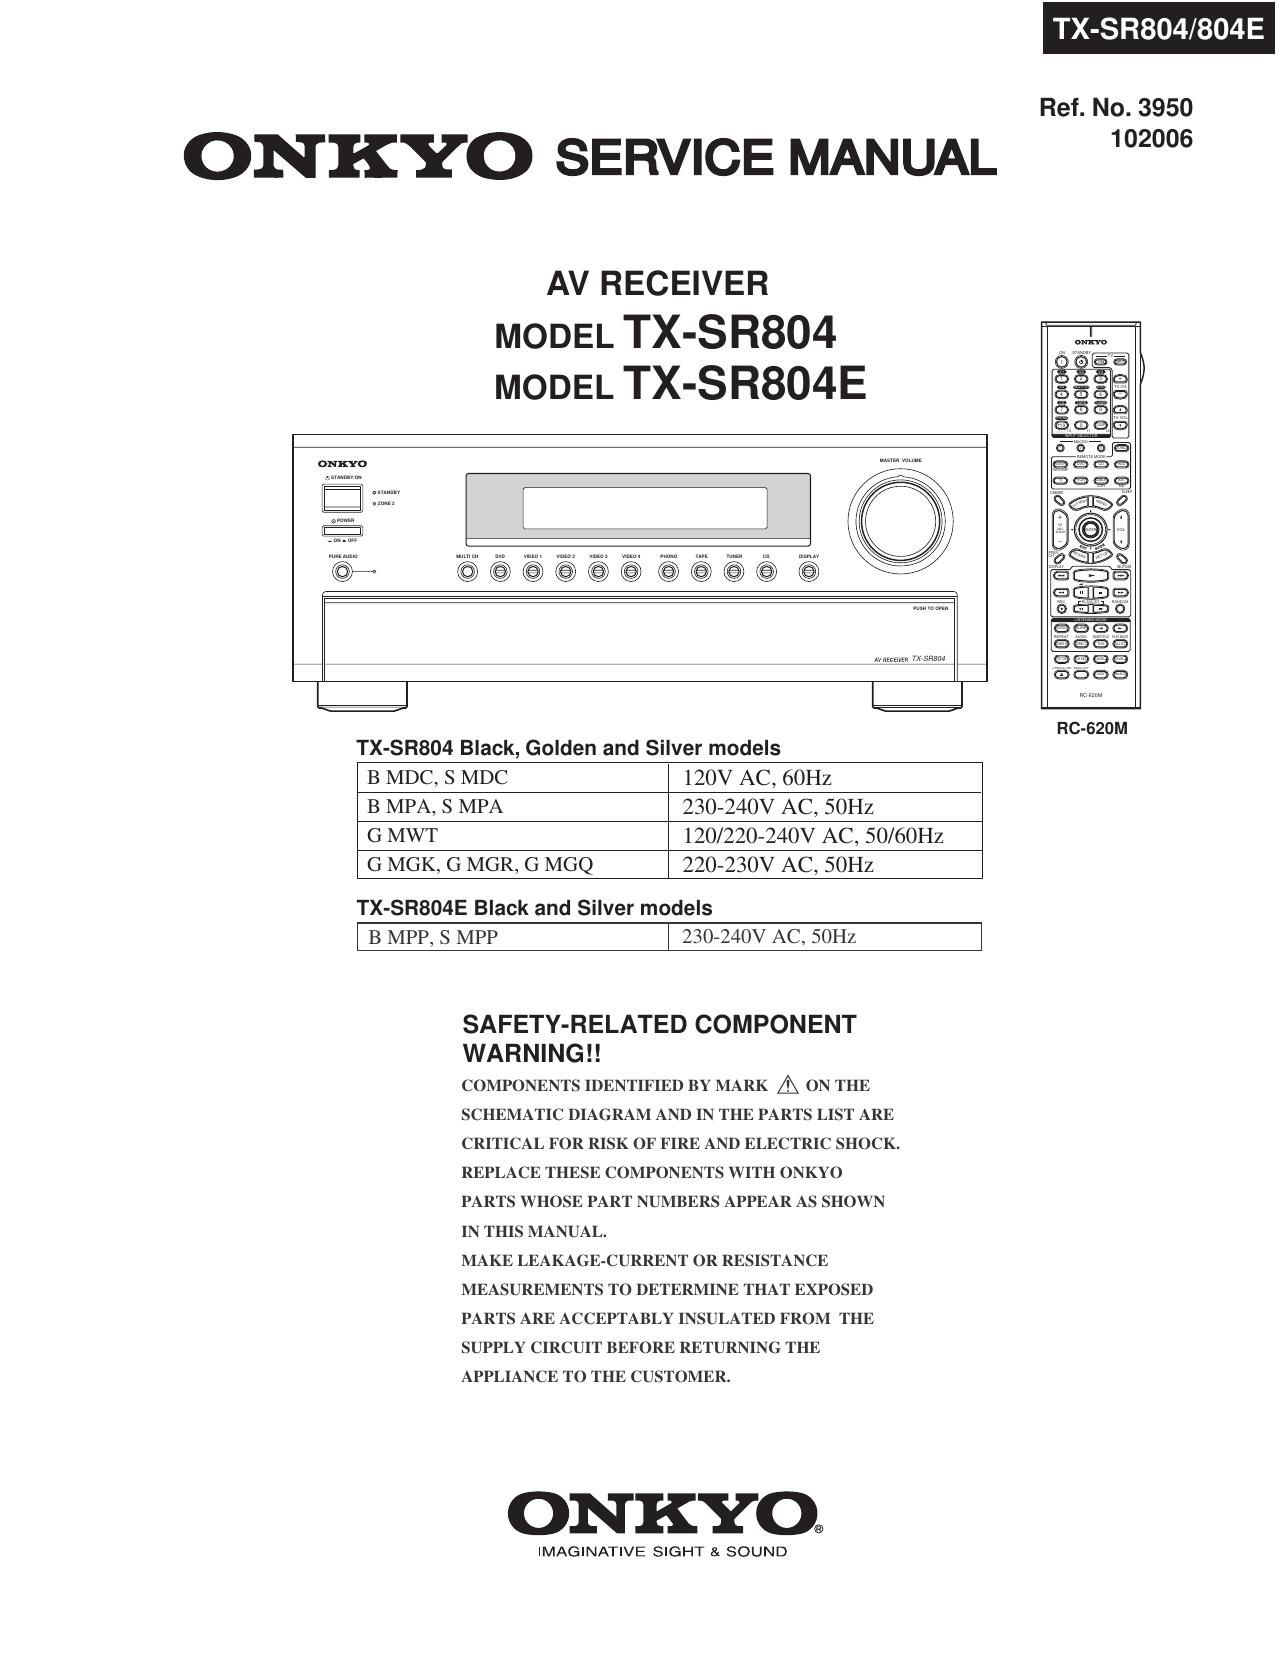 Onkyo TXSR 804 E Service Manual